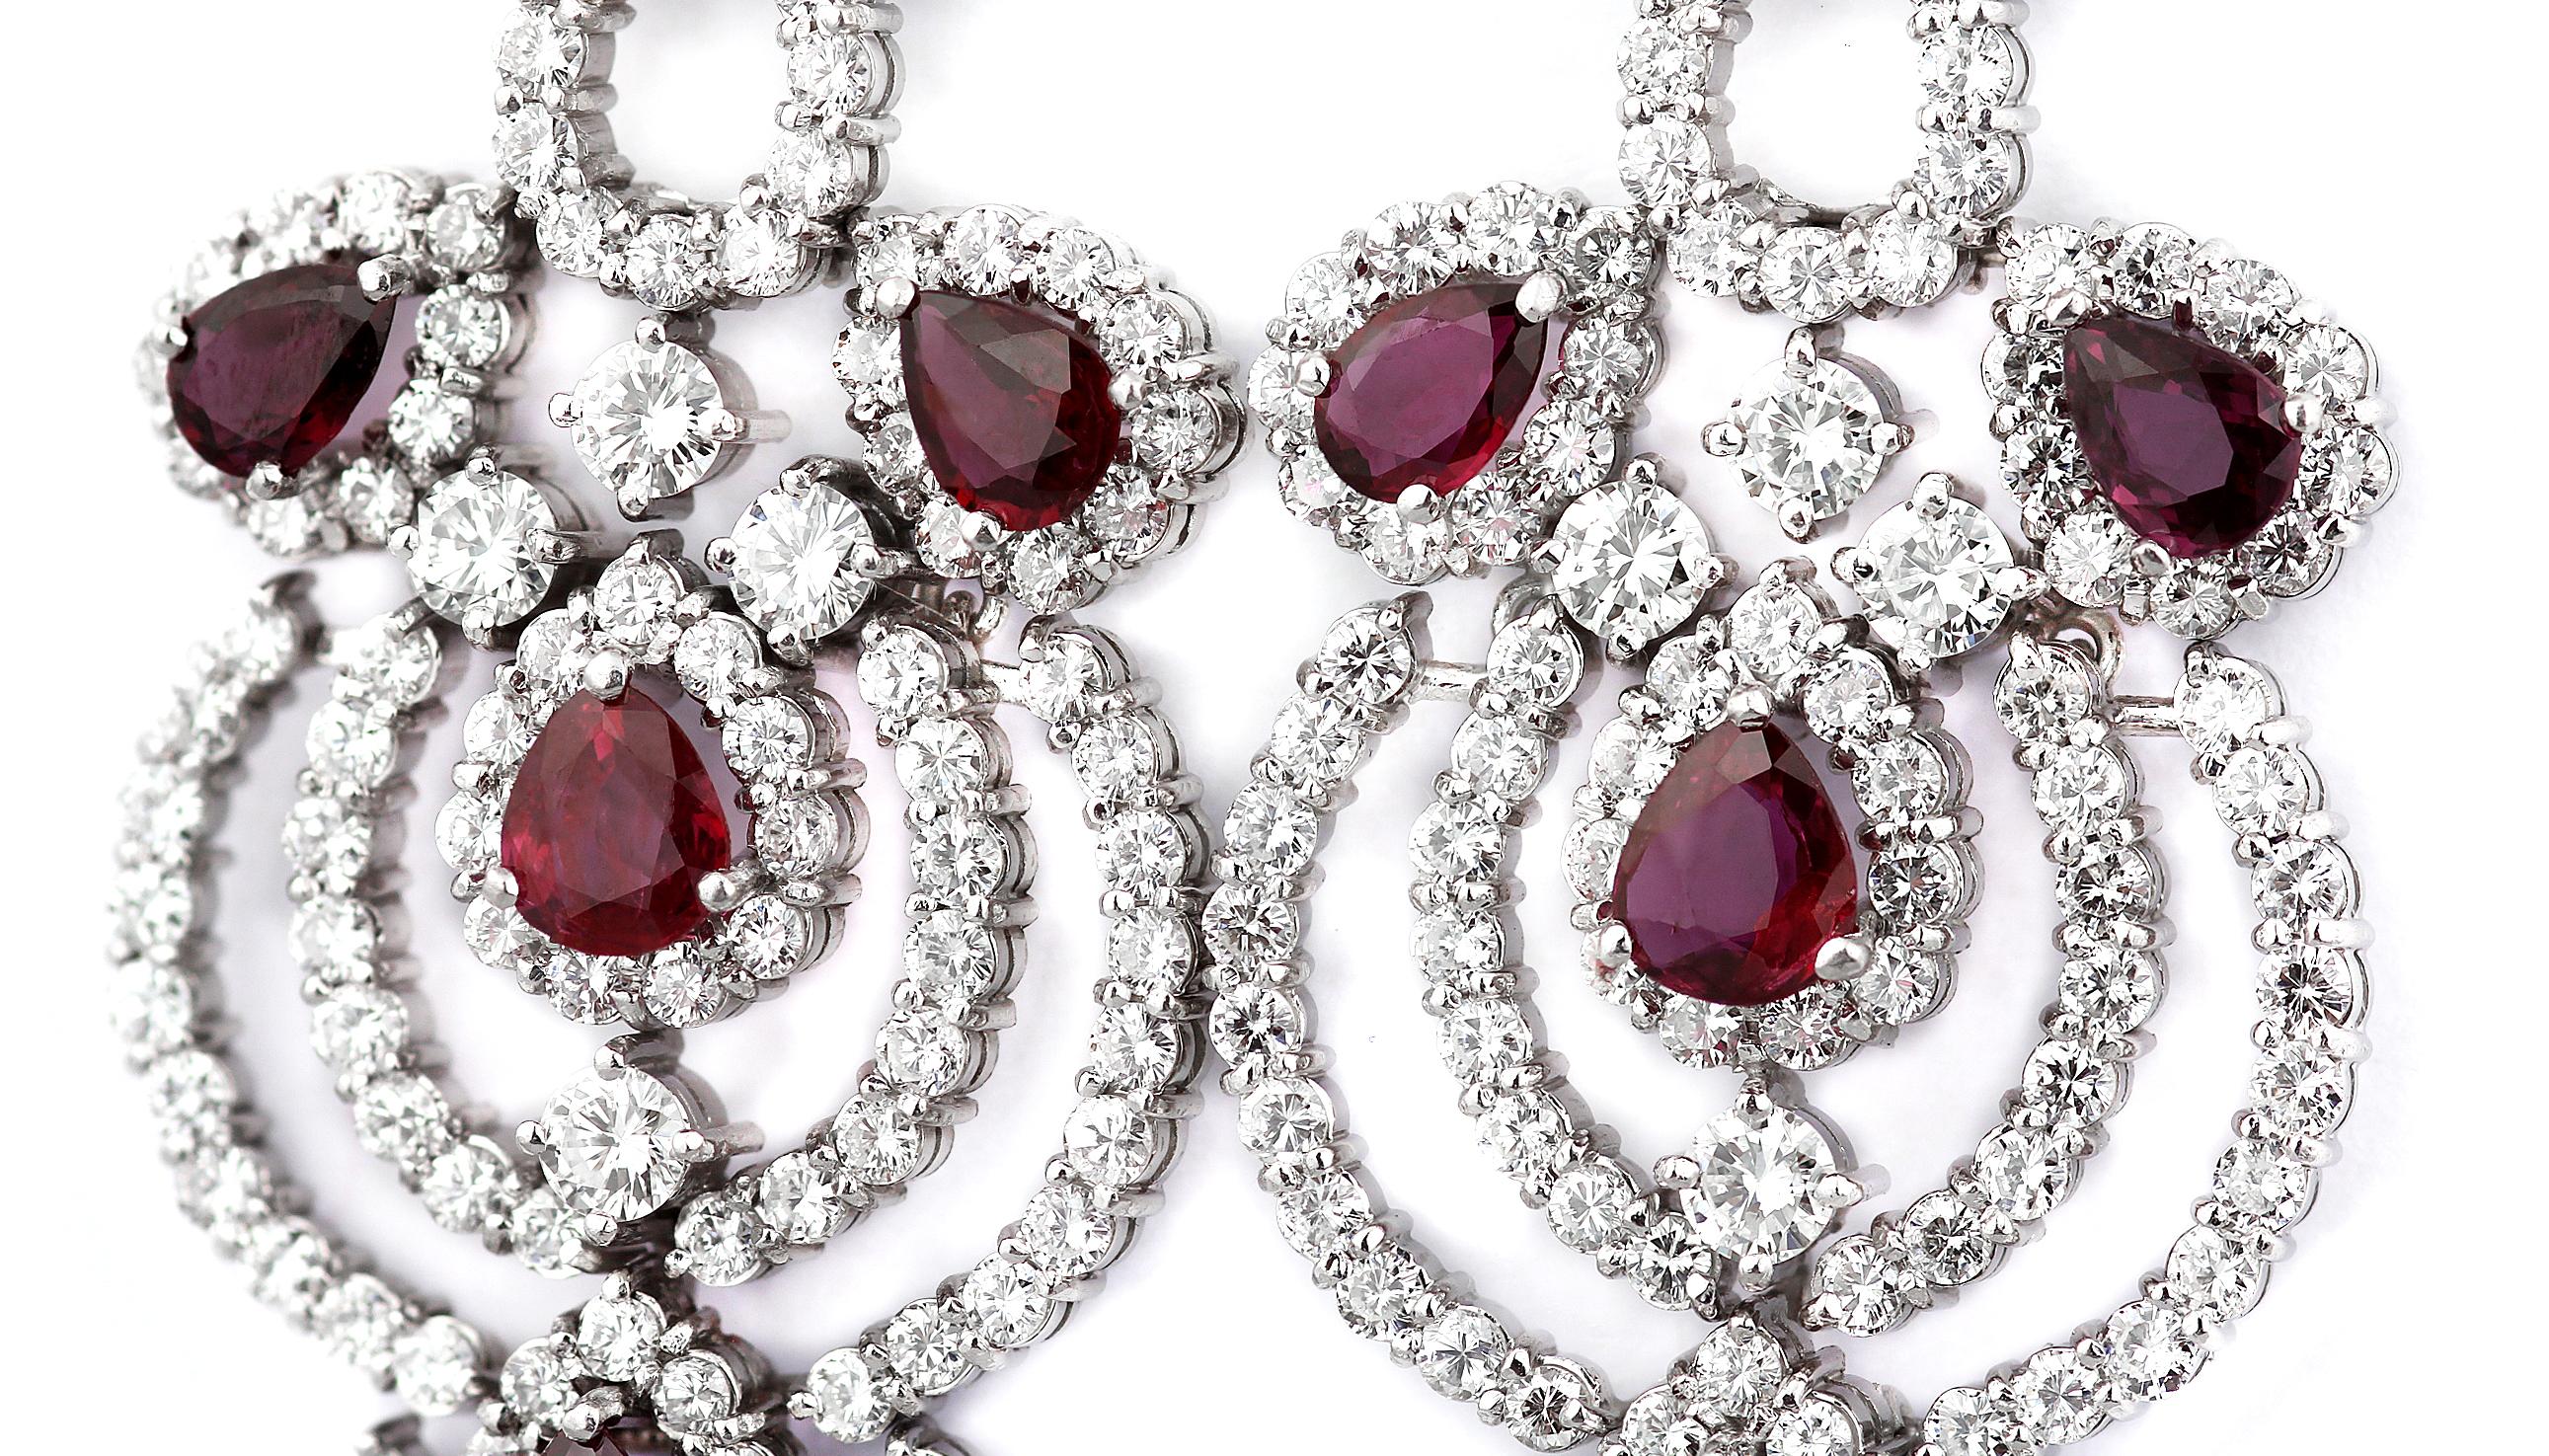 Retro Pair of Ruby & Diamond Drop/Chandelier Earrings in 18K White Gold 2